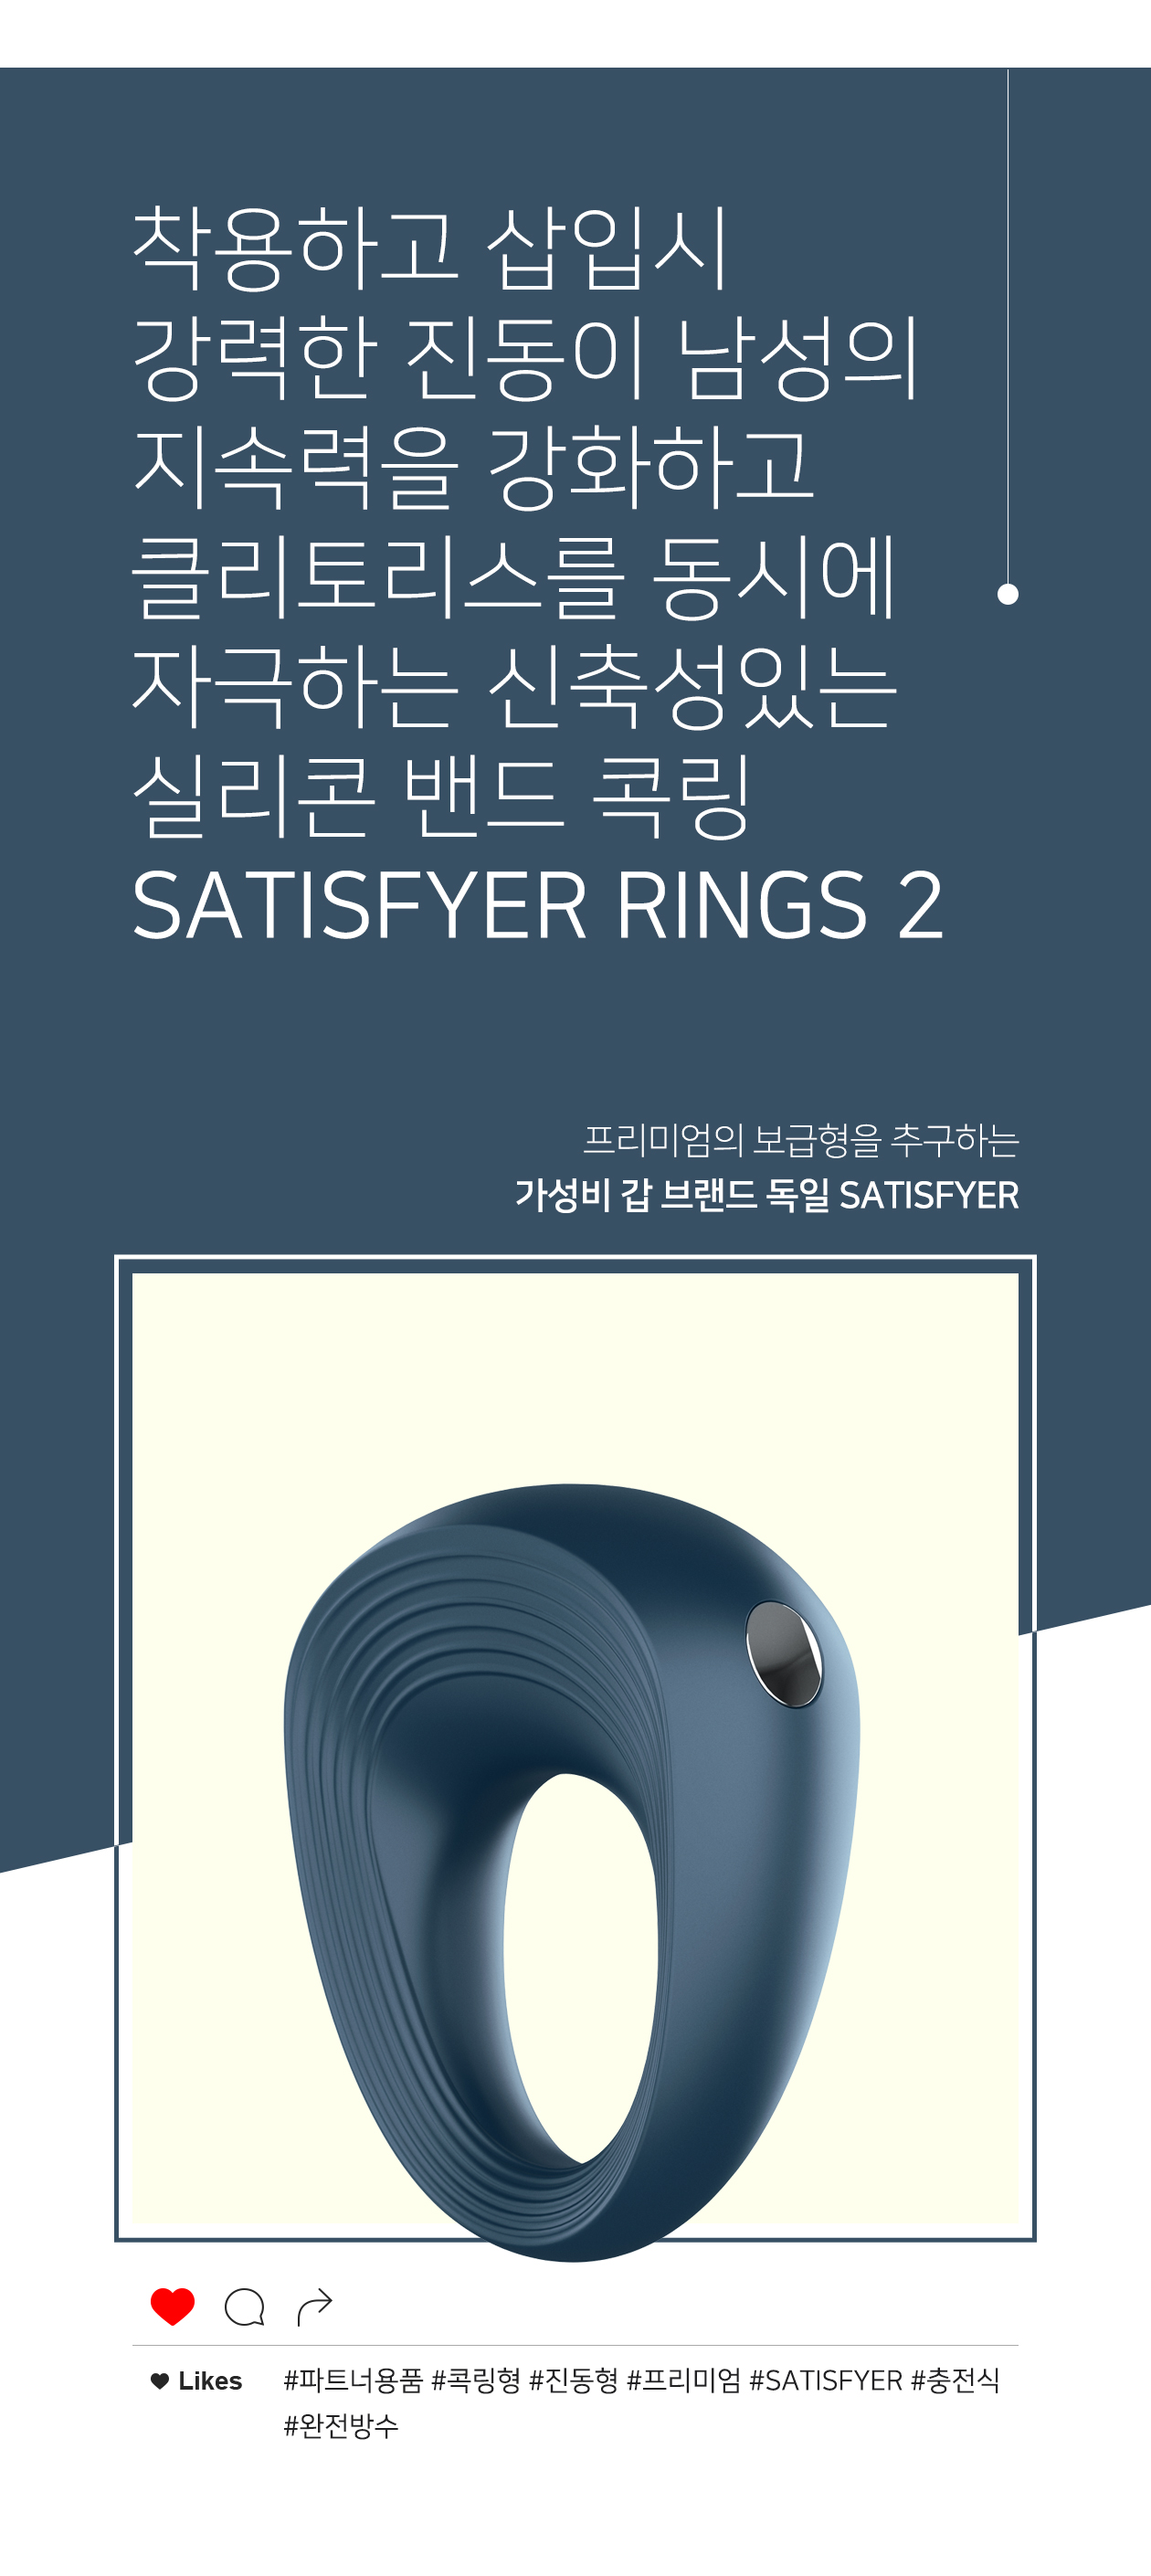 SATISFYER RINGS 2 POWER RING